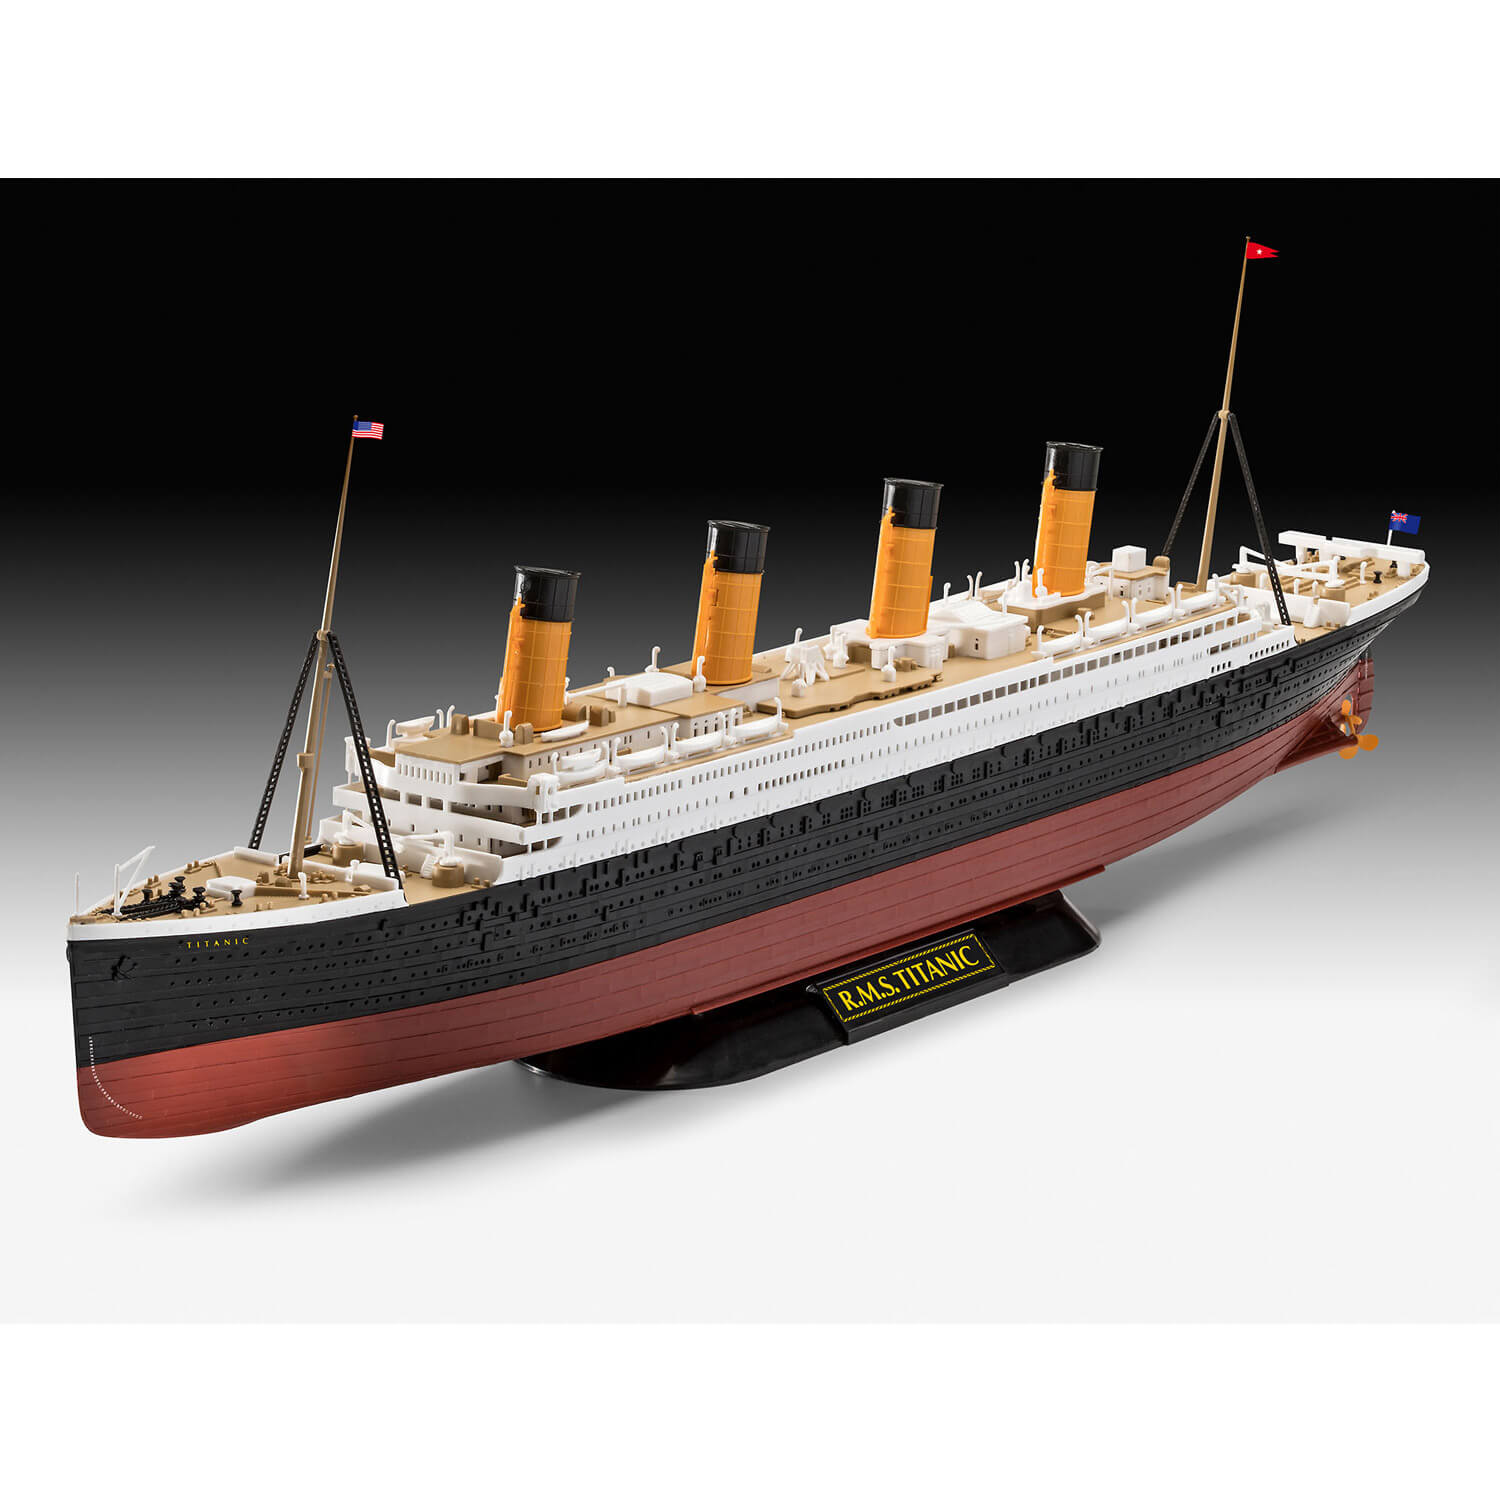 Maquette Revell R.M.S. Titanic 1/700 à 14,96 euros livrée (Terminé)